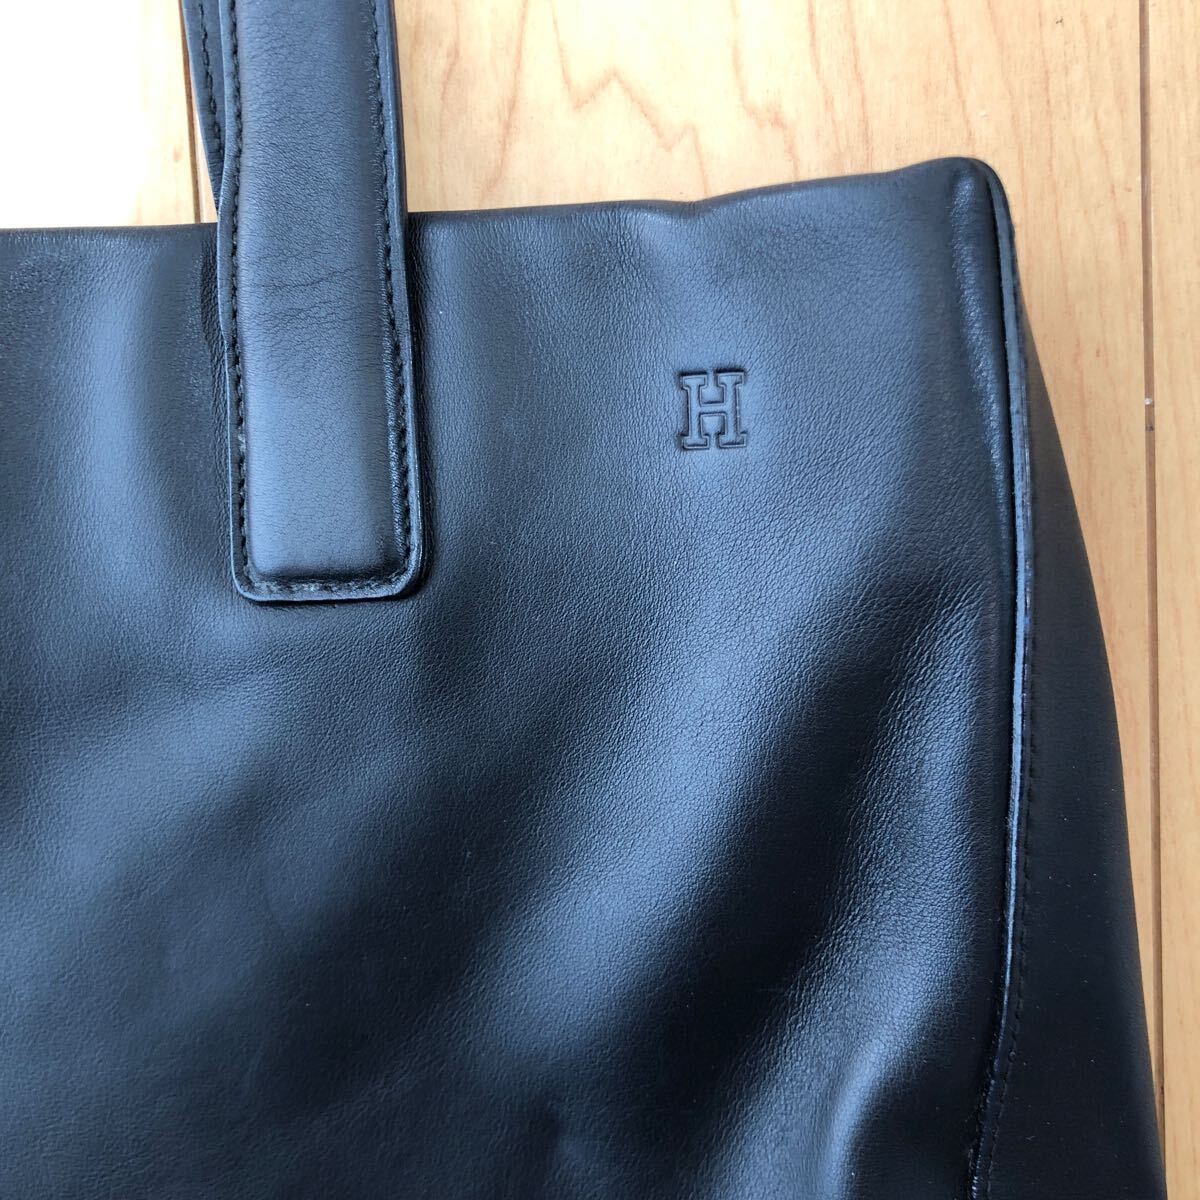 ¥1~ Hirofu прекрасный товар мужской кожа чёрный черный большая сумка HIROFU